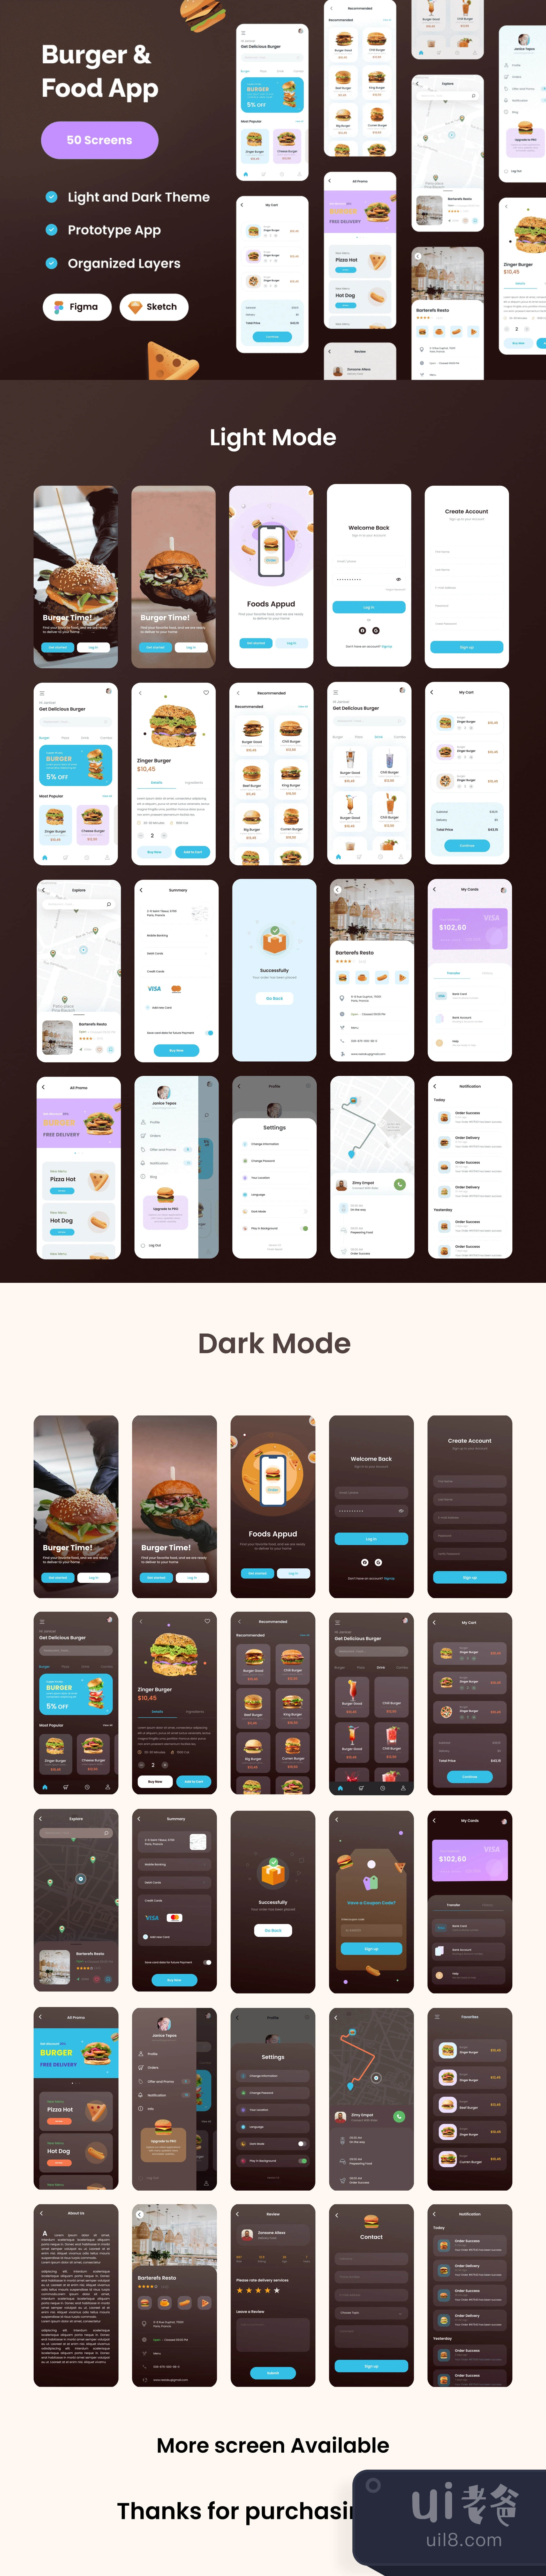 食品汉堡应用 (Food Burger App)插图